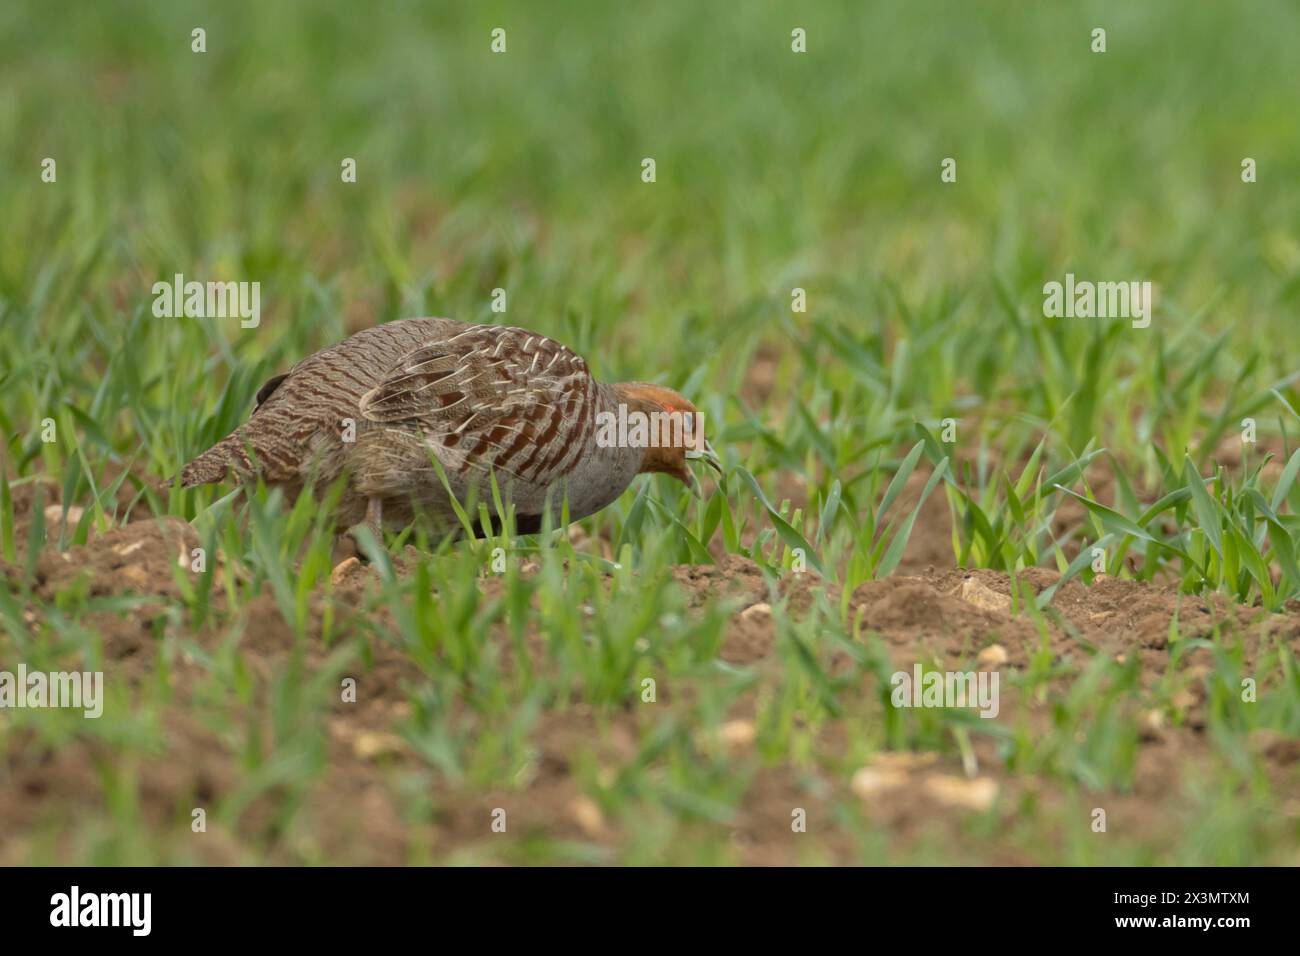 Perdrix grise ou anglaise (Perdix perdix) pour oiseaux adultes se nourrissant dans un champ de céréales de terres agricoles, Angleterre, Royaume-Uni Banque D'Images